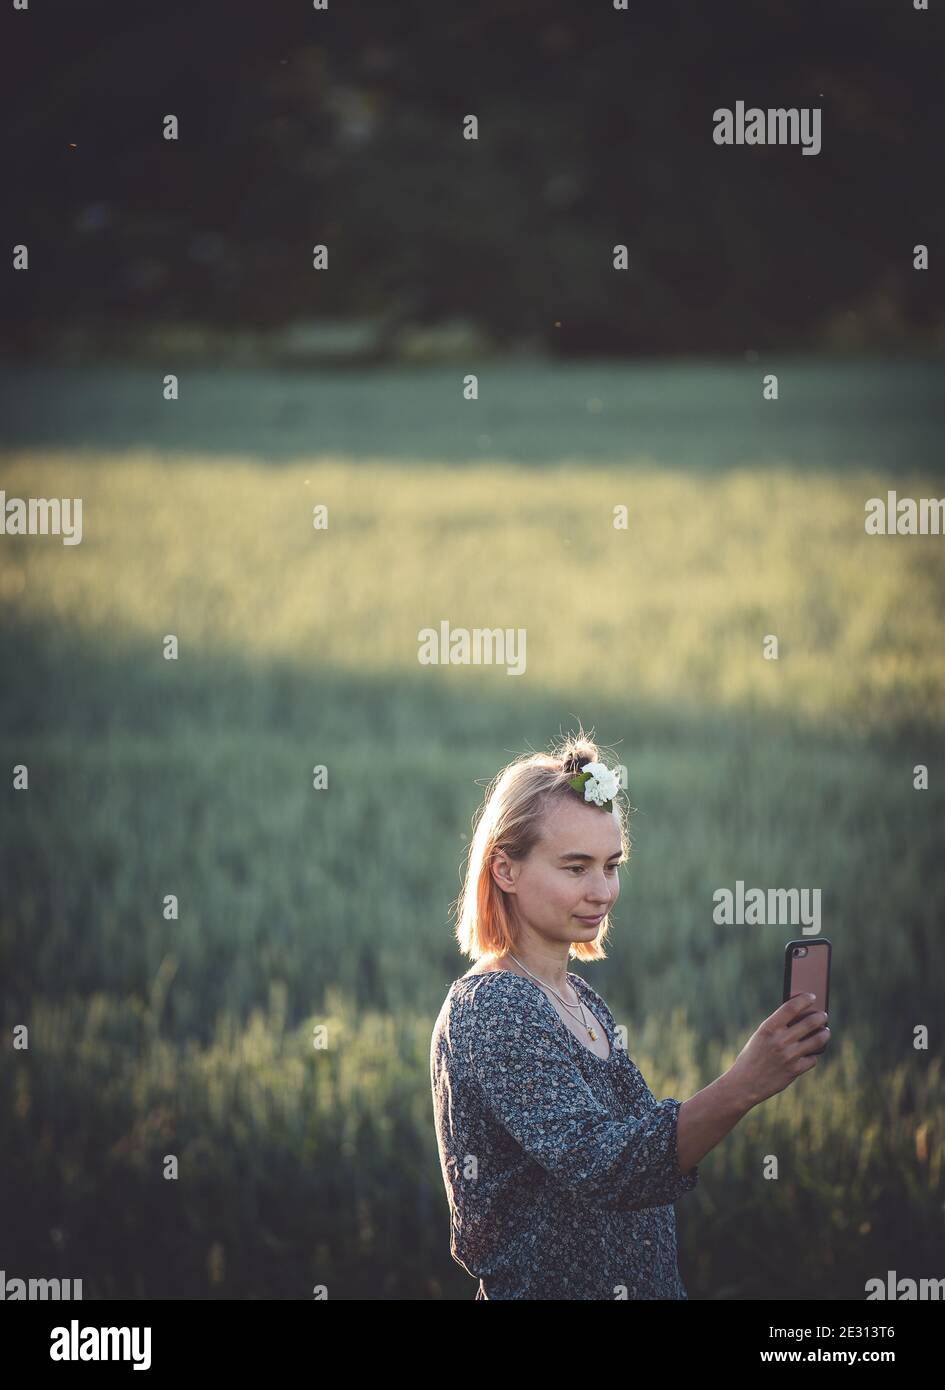 Eine junge Frau, die ihr Telefon in einem blauen Kleid hält Und mit einer weißen Blume im Haar nimmt ein Selfie steht in einem Gerstenfeld Stockfoto